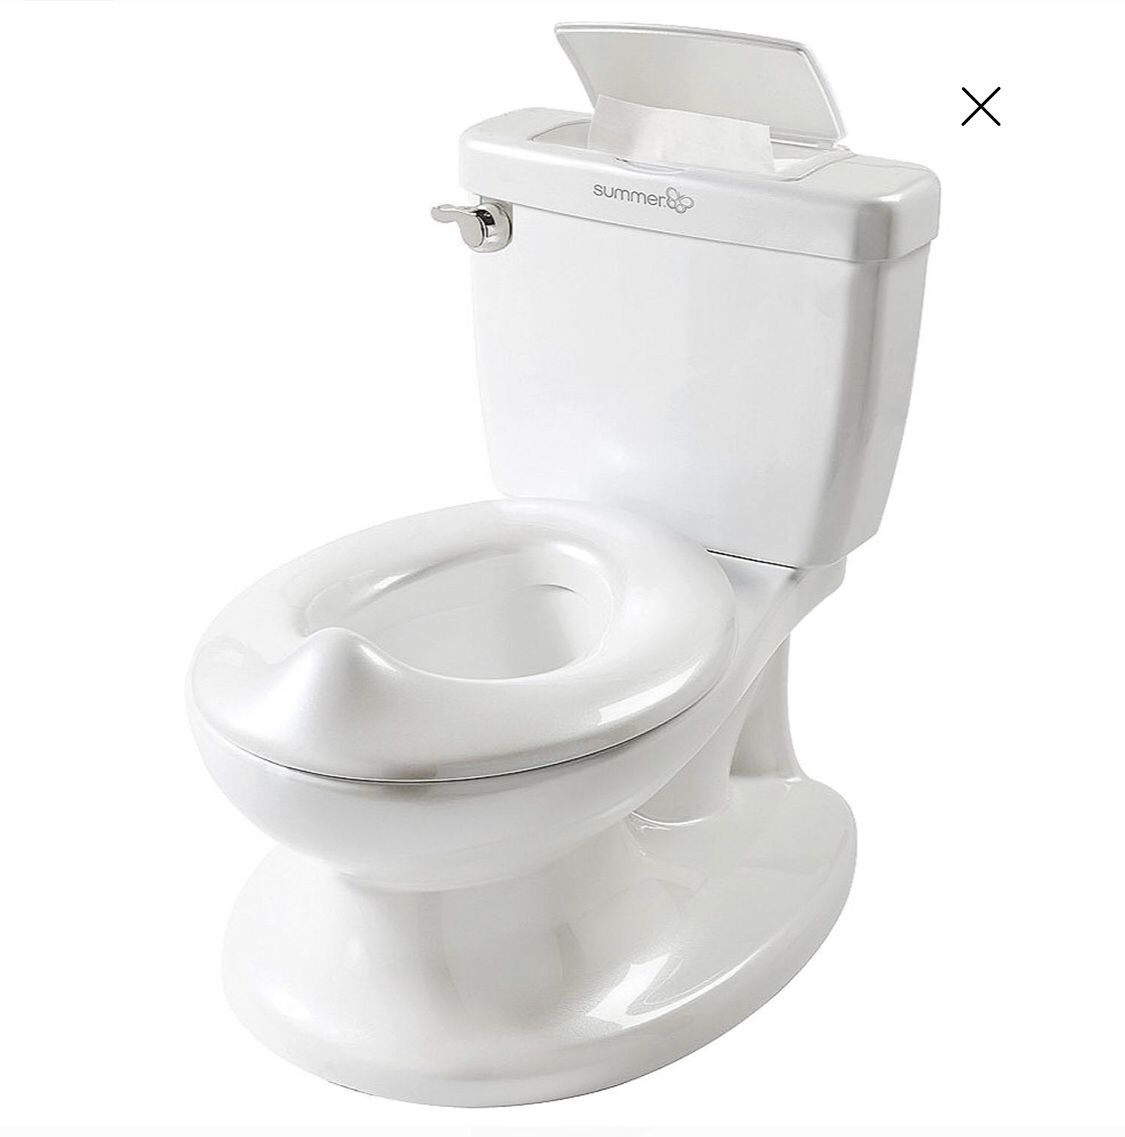 Potty trainer toilet